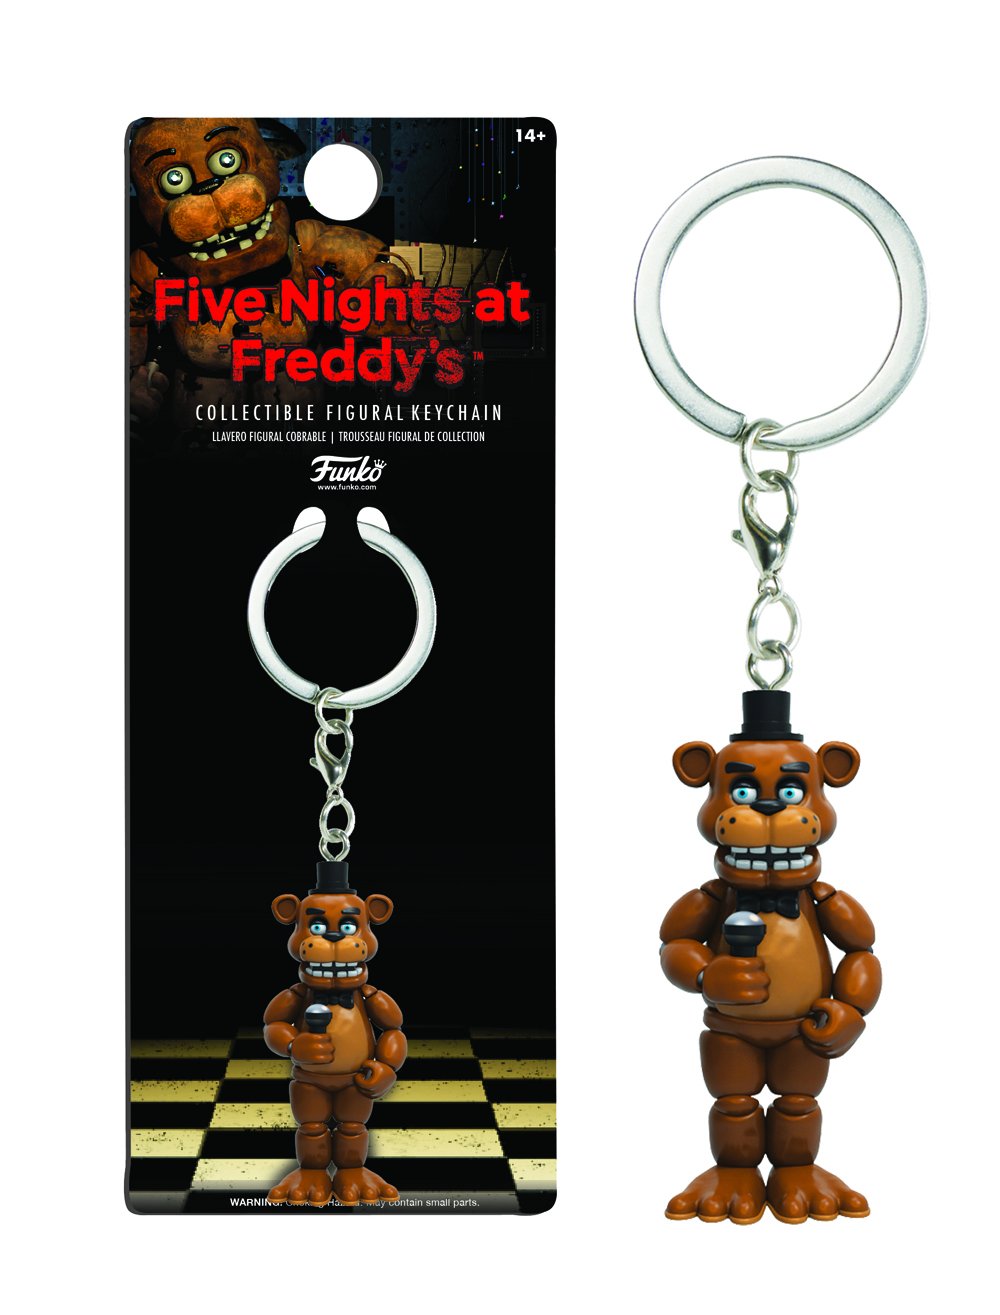 Freddy Fazbear Plushy Polymer Clay Keychain from Five Nights at Freddy's